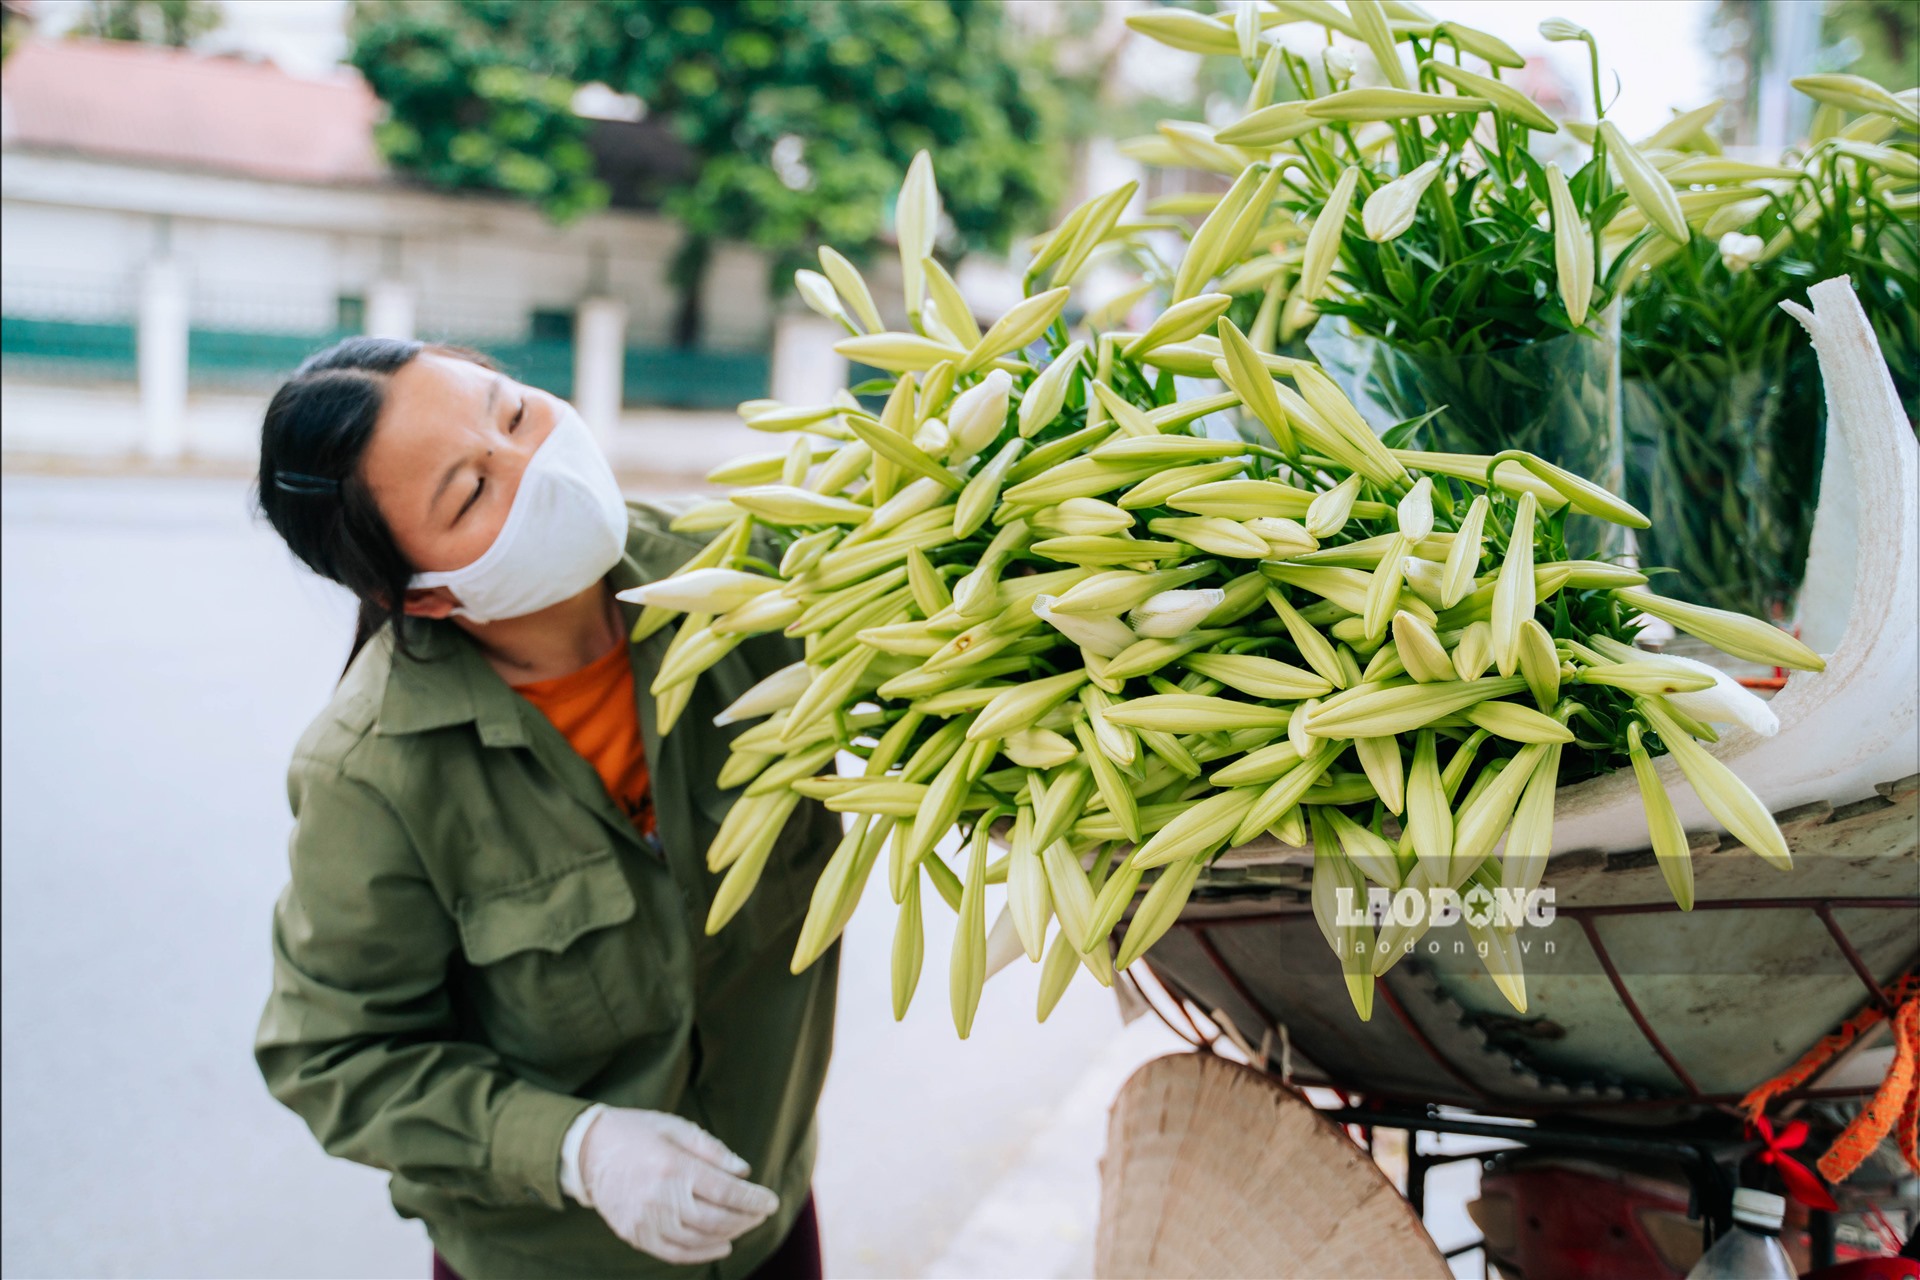 Chị Hạnh, một người bán hoa rong trên phố Phan Đình Phùng (Hà Nội) chia sẻ, thời điểm này loại hoa chủ đạo được mọi người bán nhiều là hoa loa kèn, ngoài ra, cũng có một số loại hoa khác . Hoa loa kèn có giá khoảng 20.000 – 35.000 đồng/bó 10 bông lẻ giảm khoảng 50% so với cùng thời điểm đầu vụ năm ngoái.